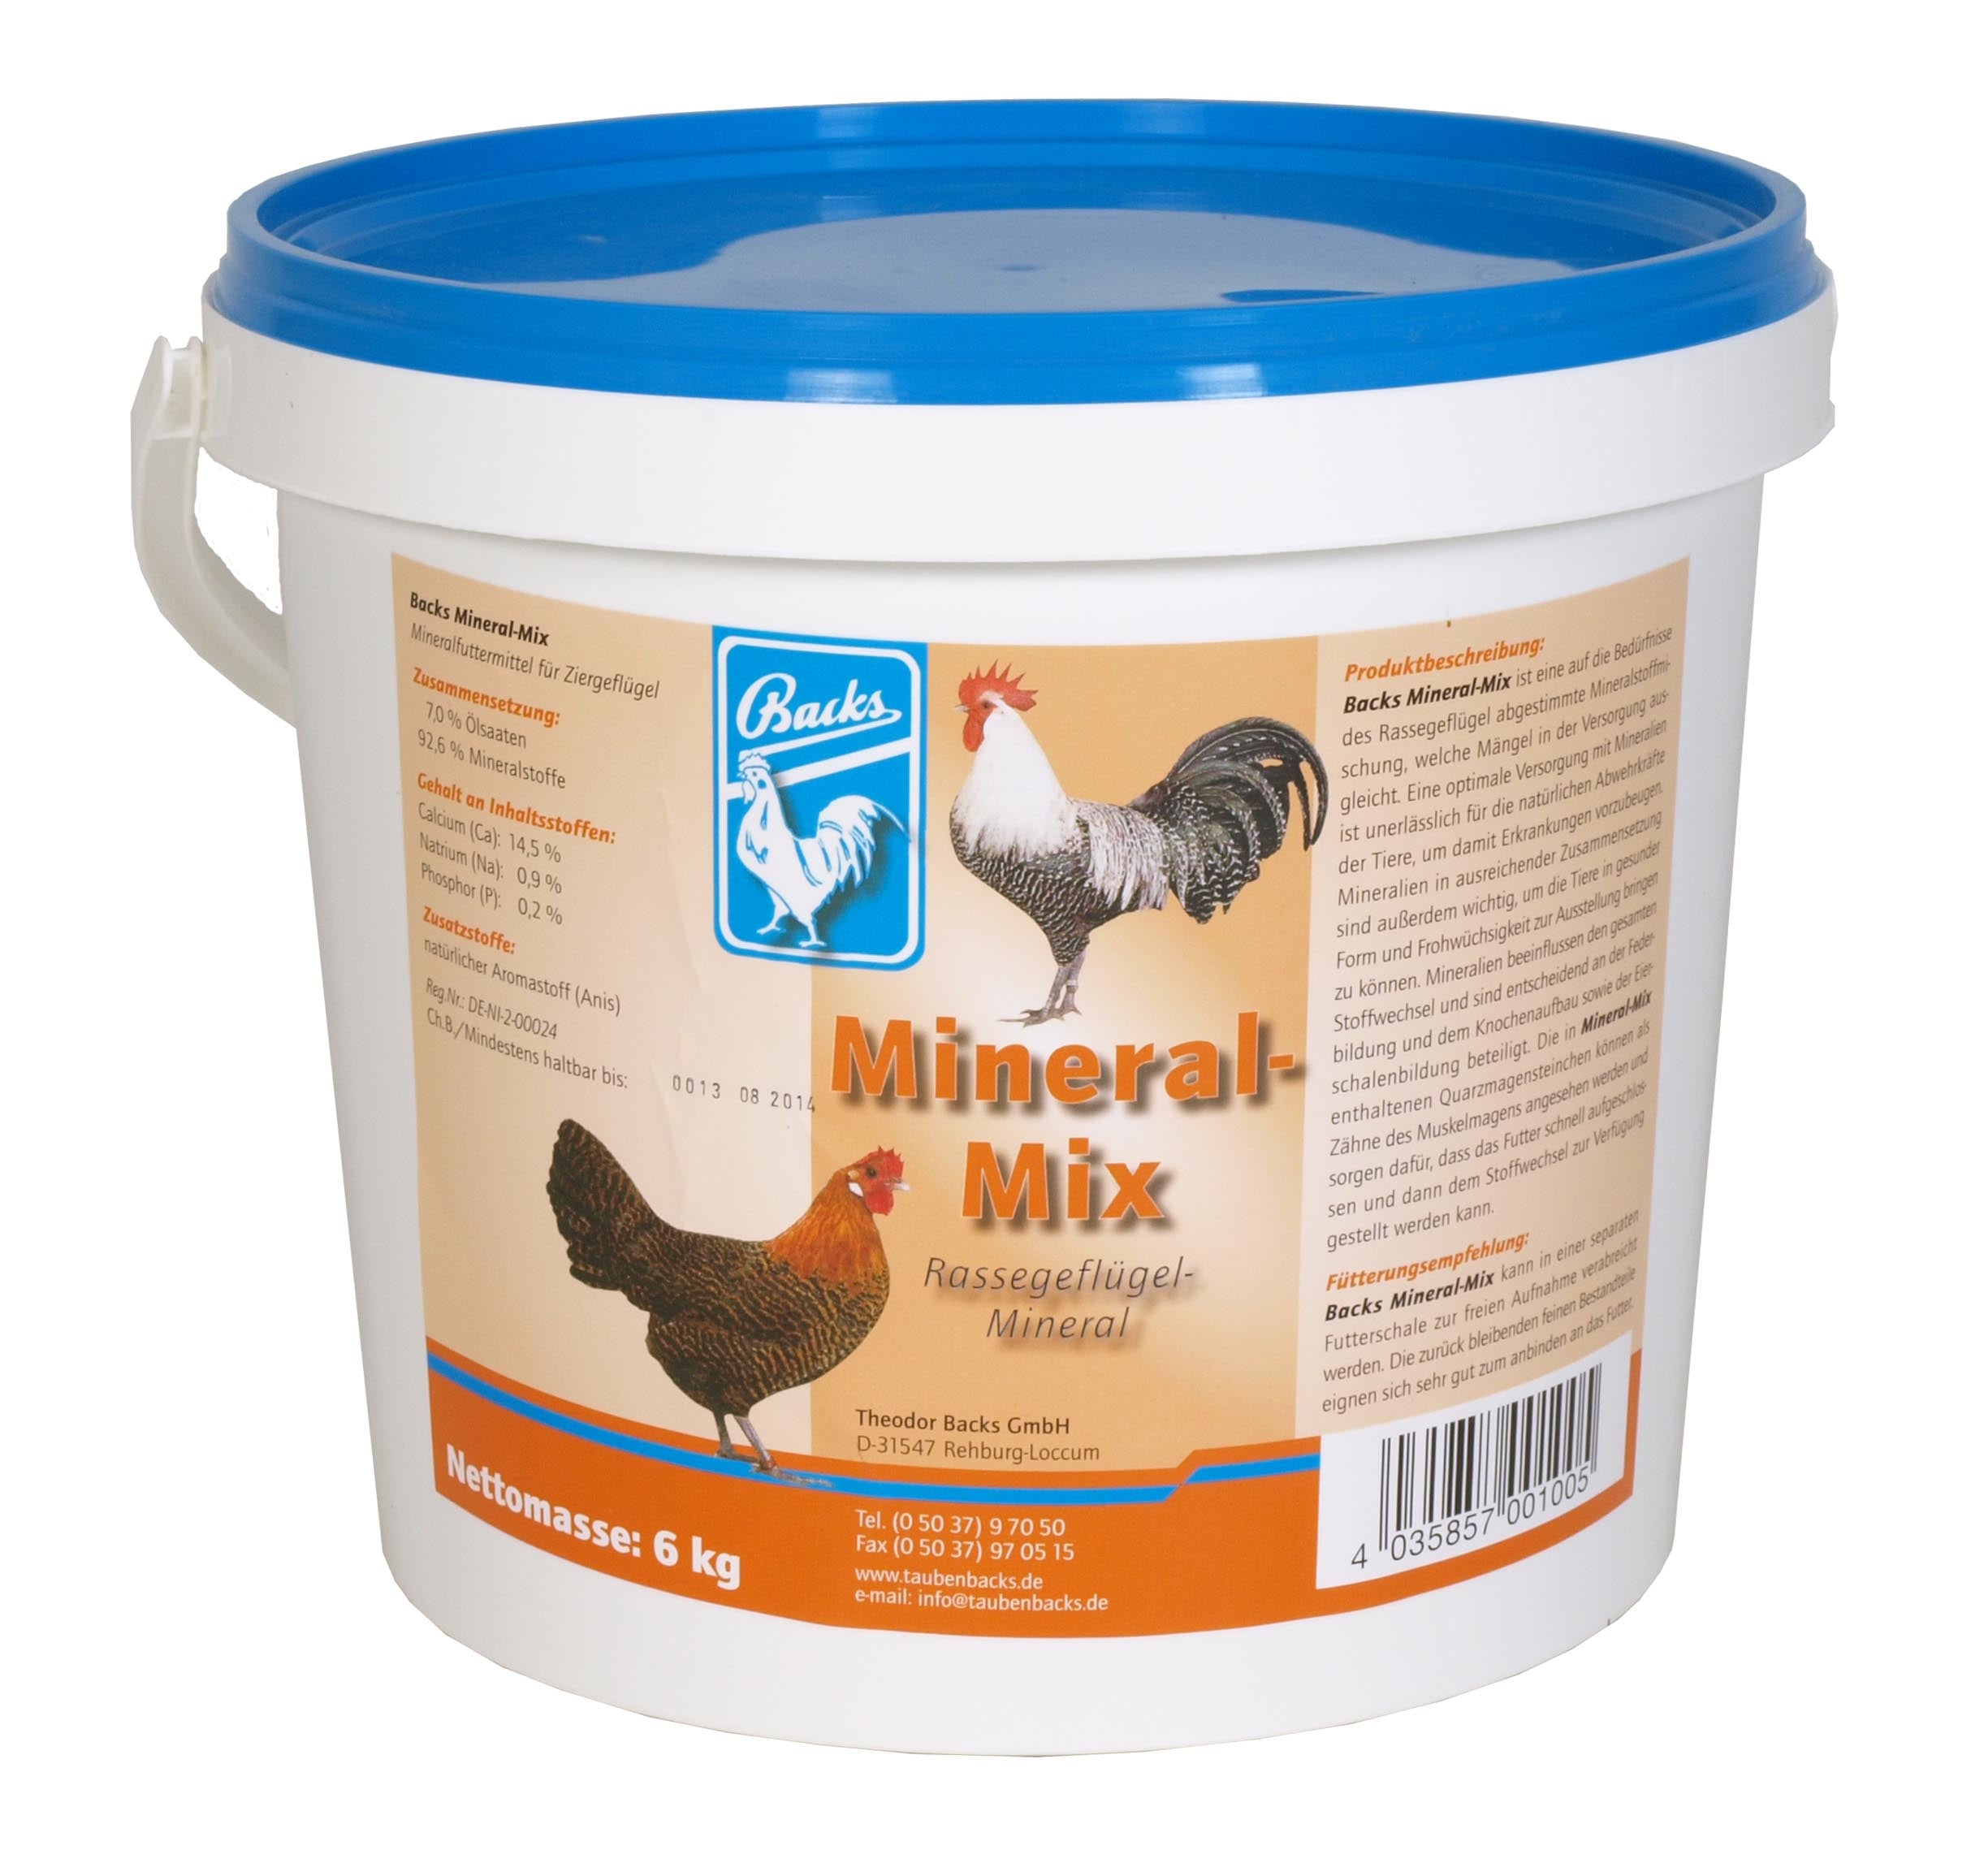 Backs Mineral-Mix for Poultry (6kg - 25kg)